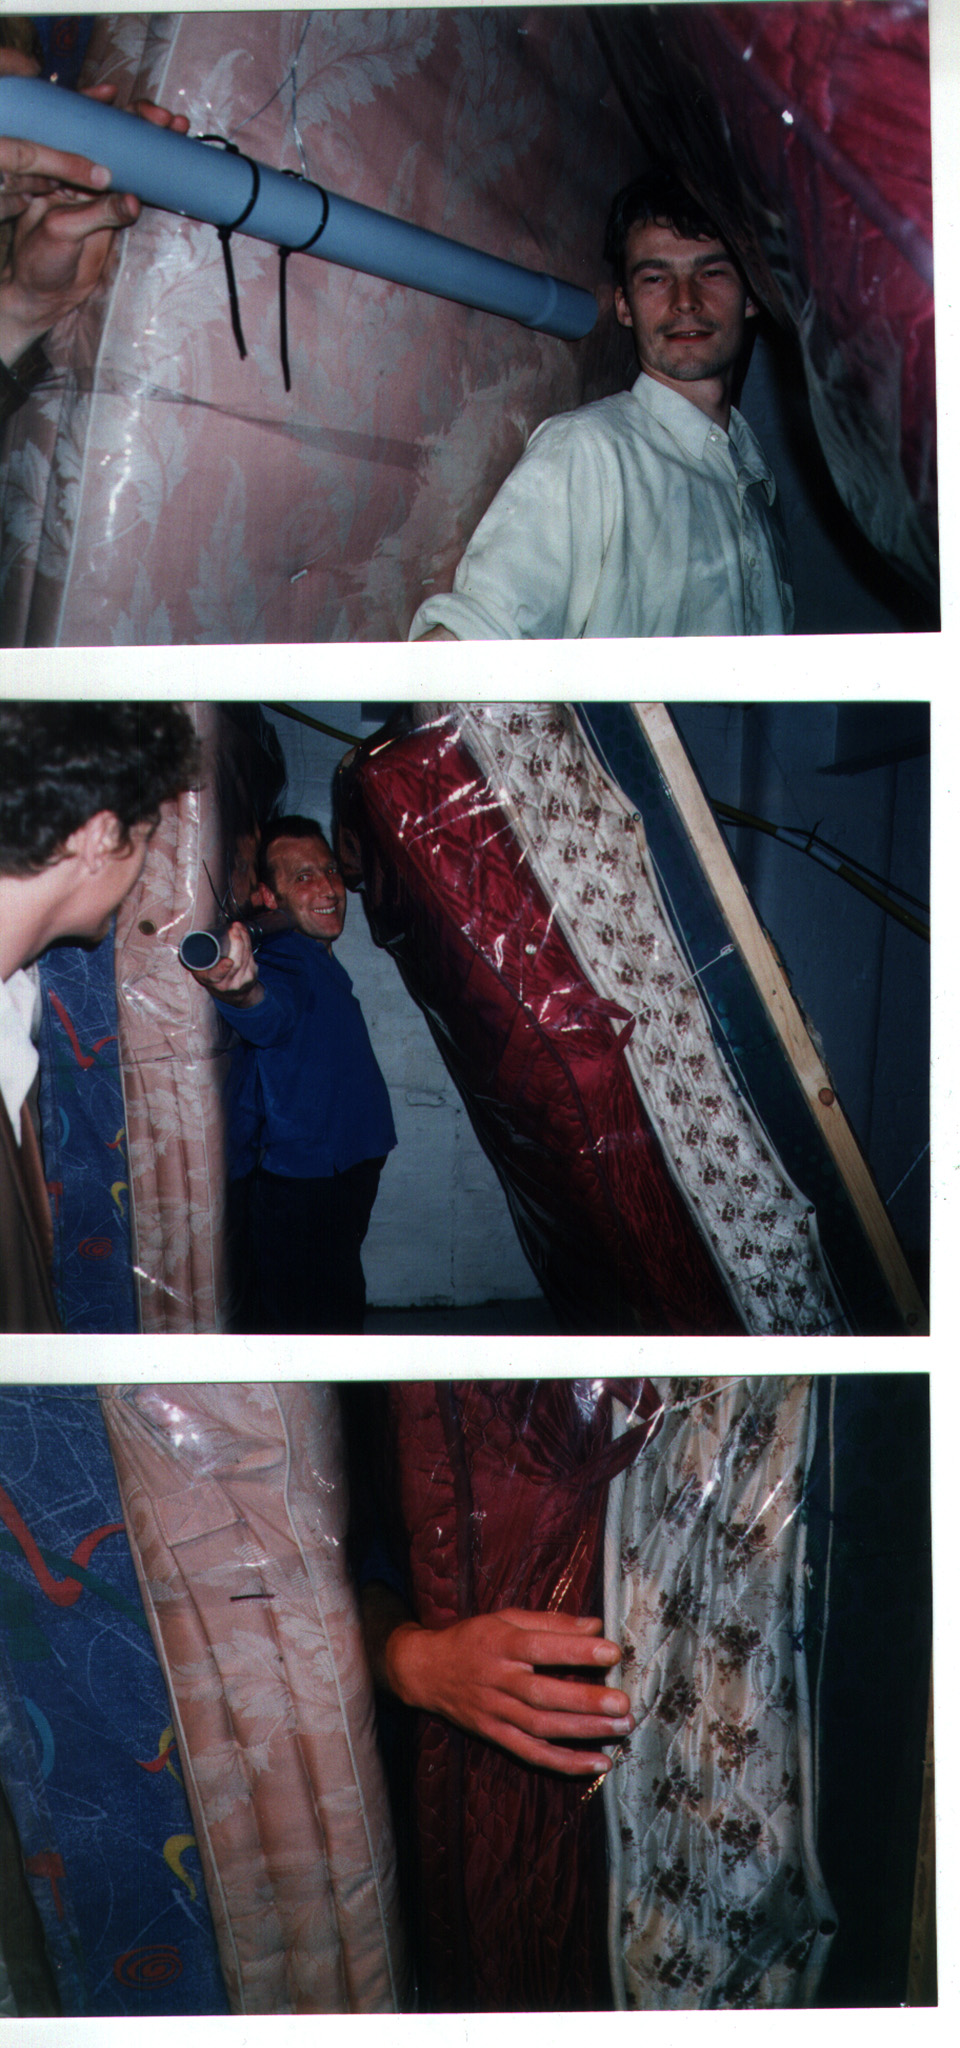 Gelatin: Installation - Hugbox, 1999, Matratzen, Holz, Mülleimer, Wasser, Kabel/matrasses